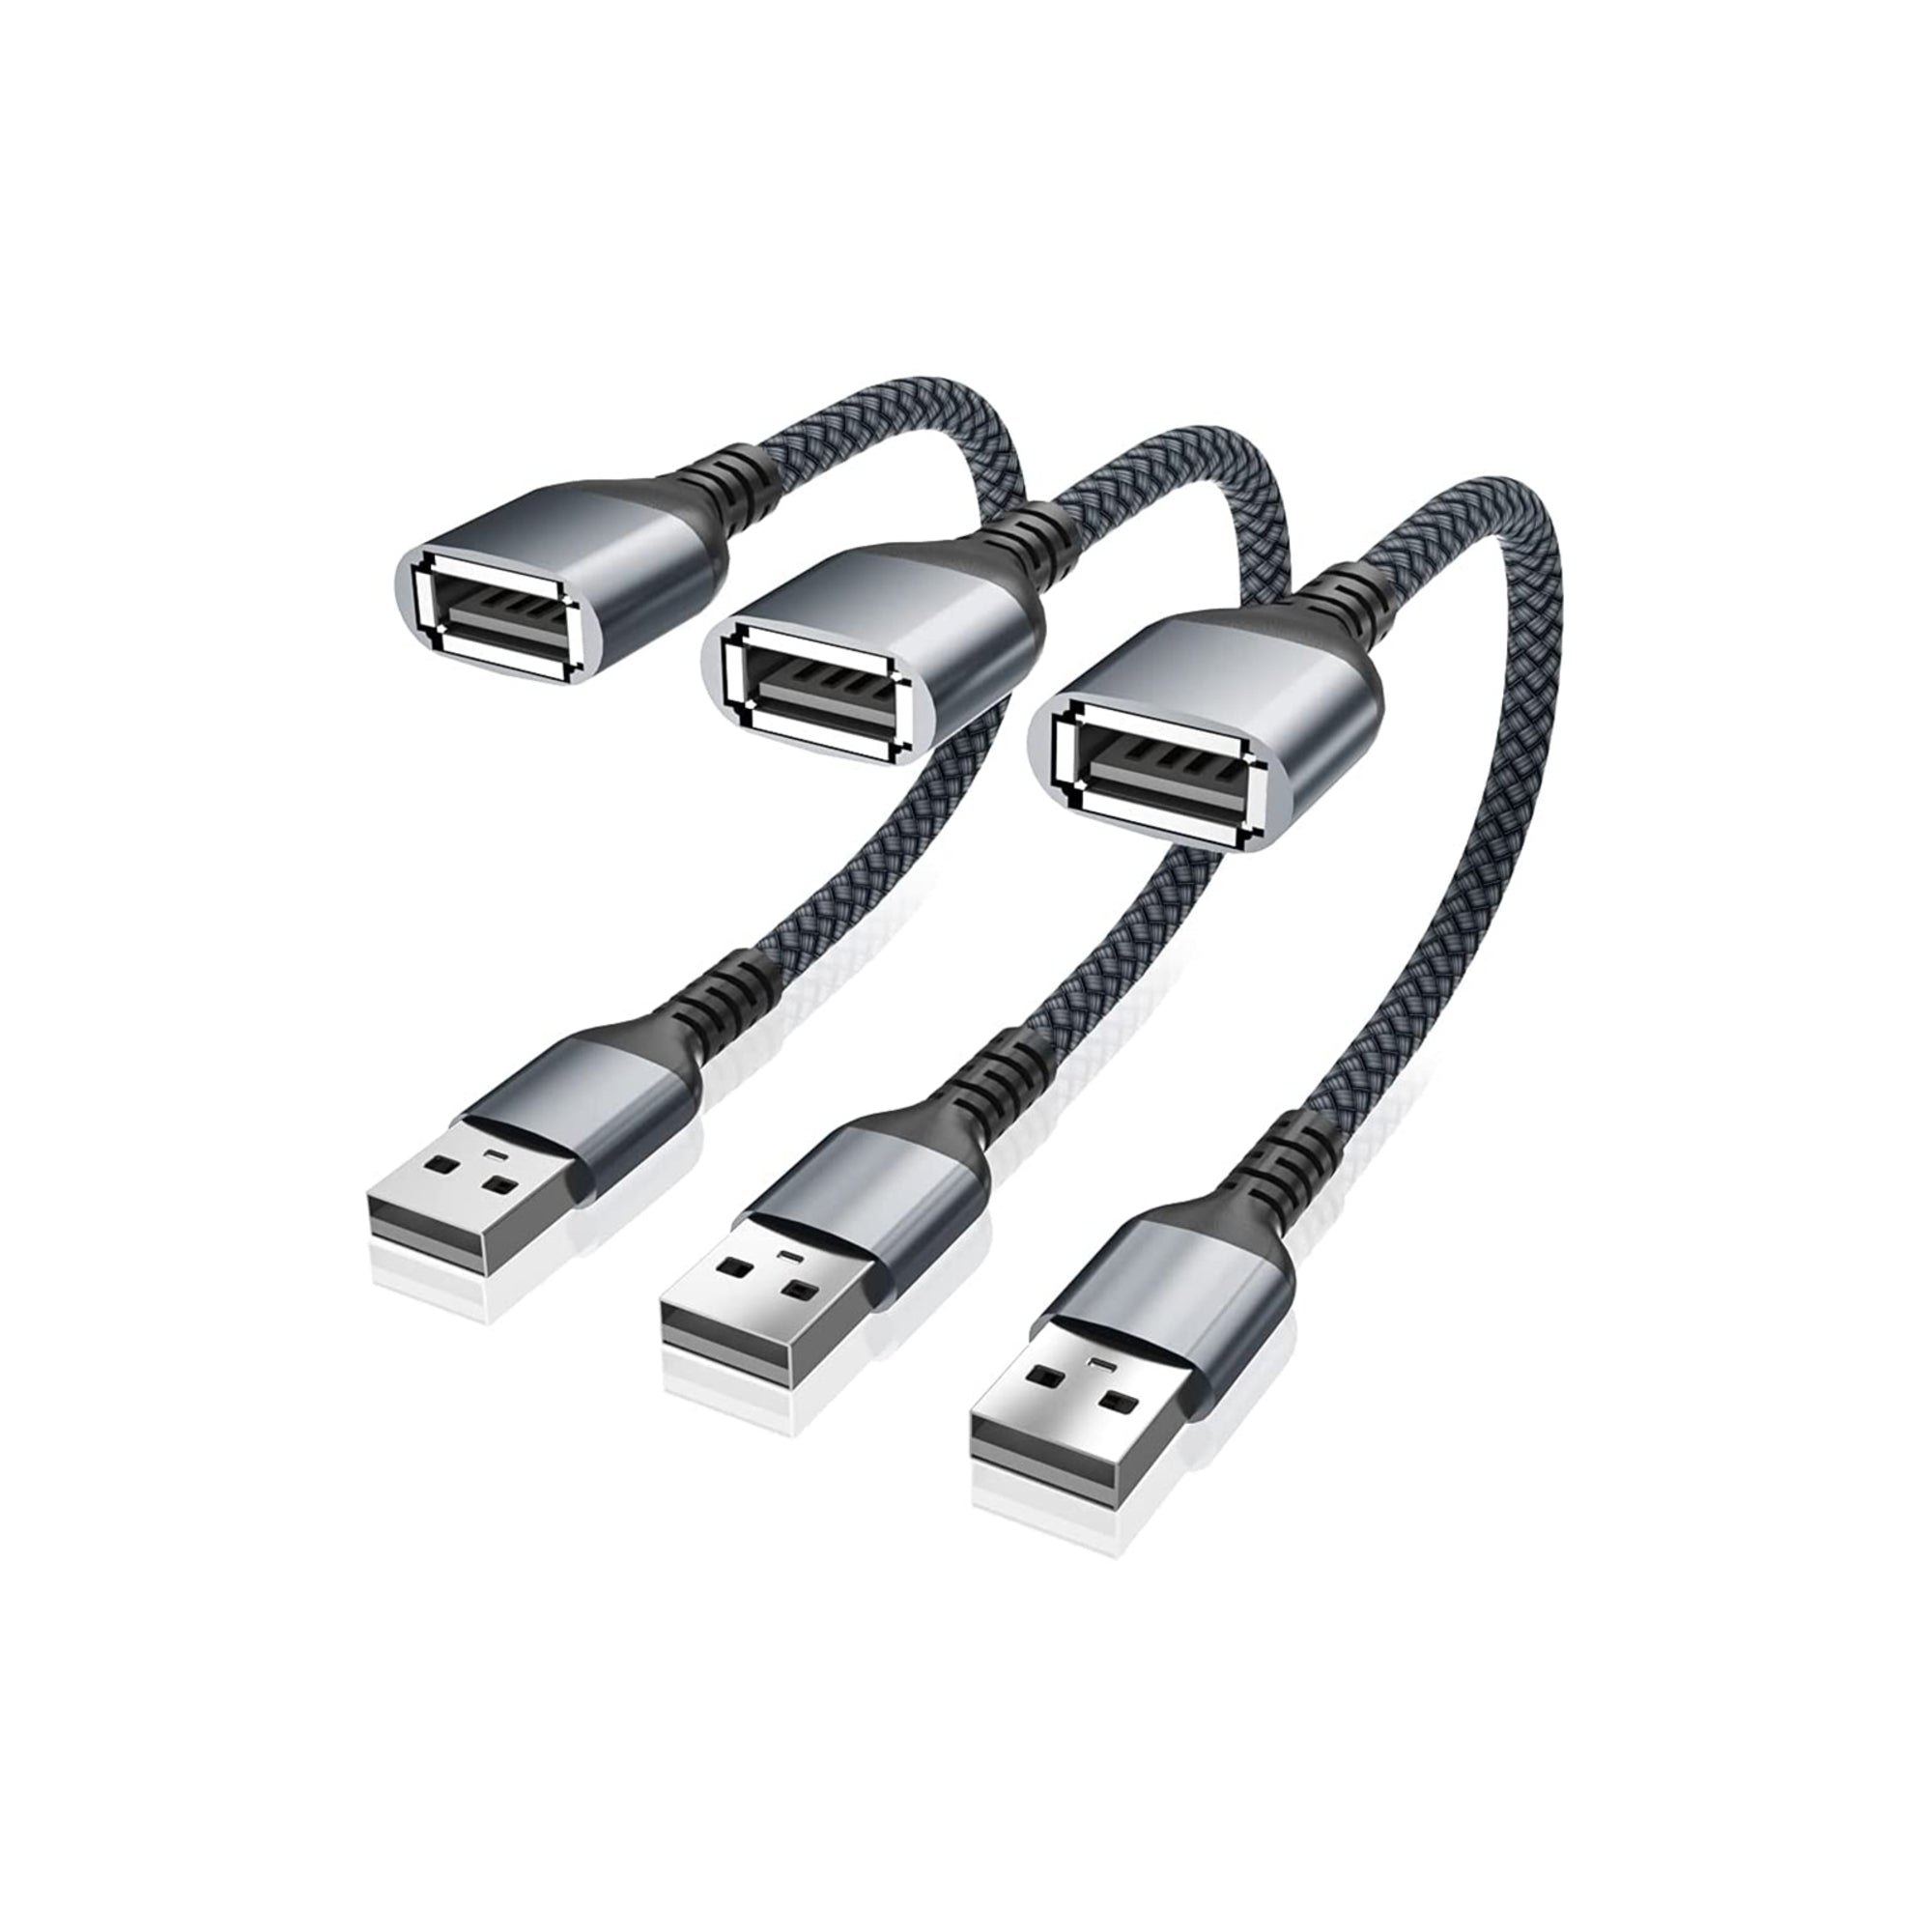 BestWhoop USB Data Blocker Adapter [3 in 1 Pack]